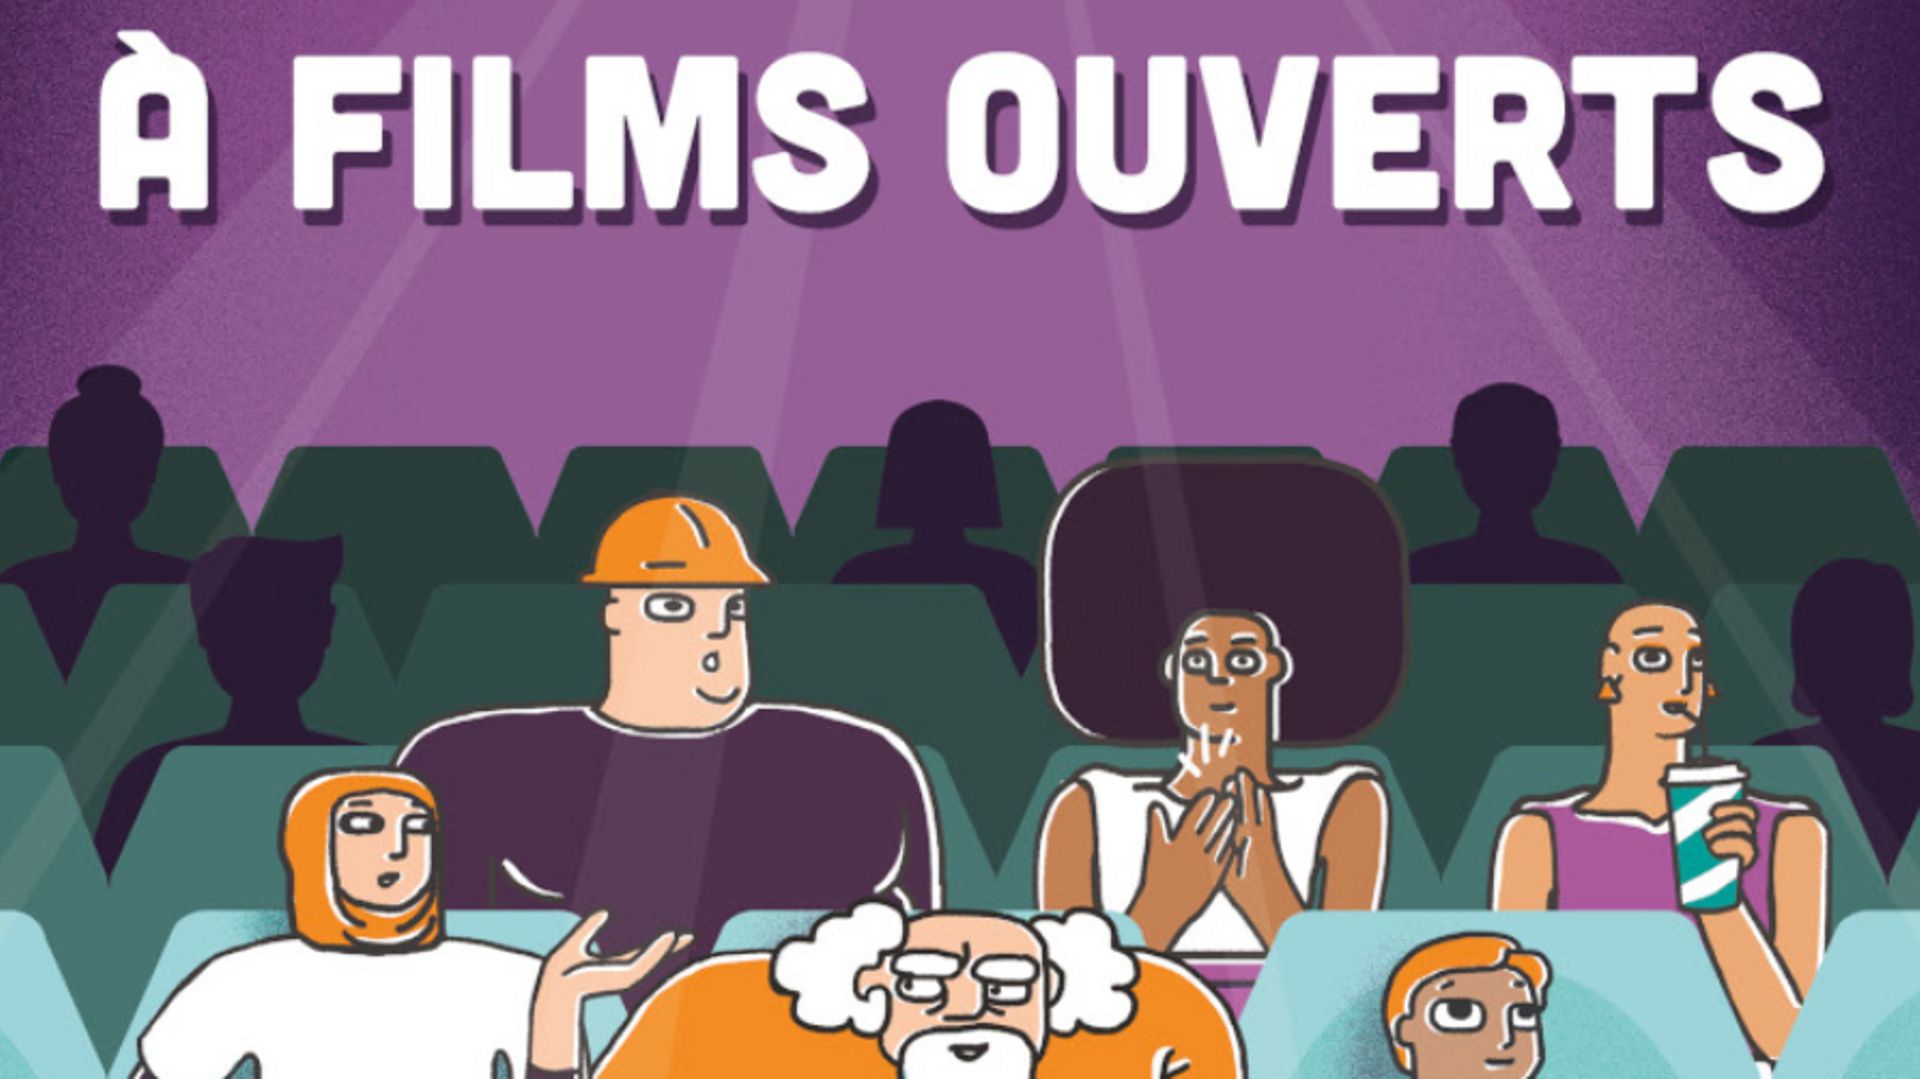 Après deux années perturbées par la pandémie, le Festival "À Films Ouverts" reviendra prochainement en Wallonie et à Bruxelles, avec plus de 55 projections-débats autour de l’interculturalité et de la lutte contre le racisme.